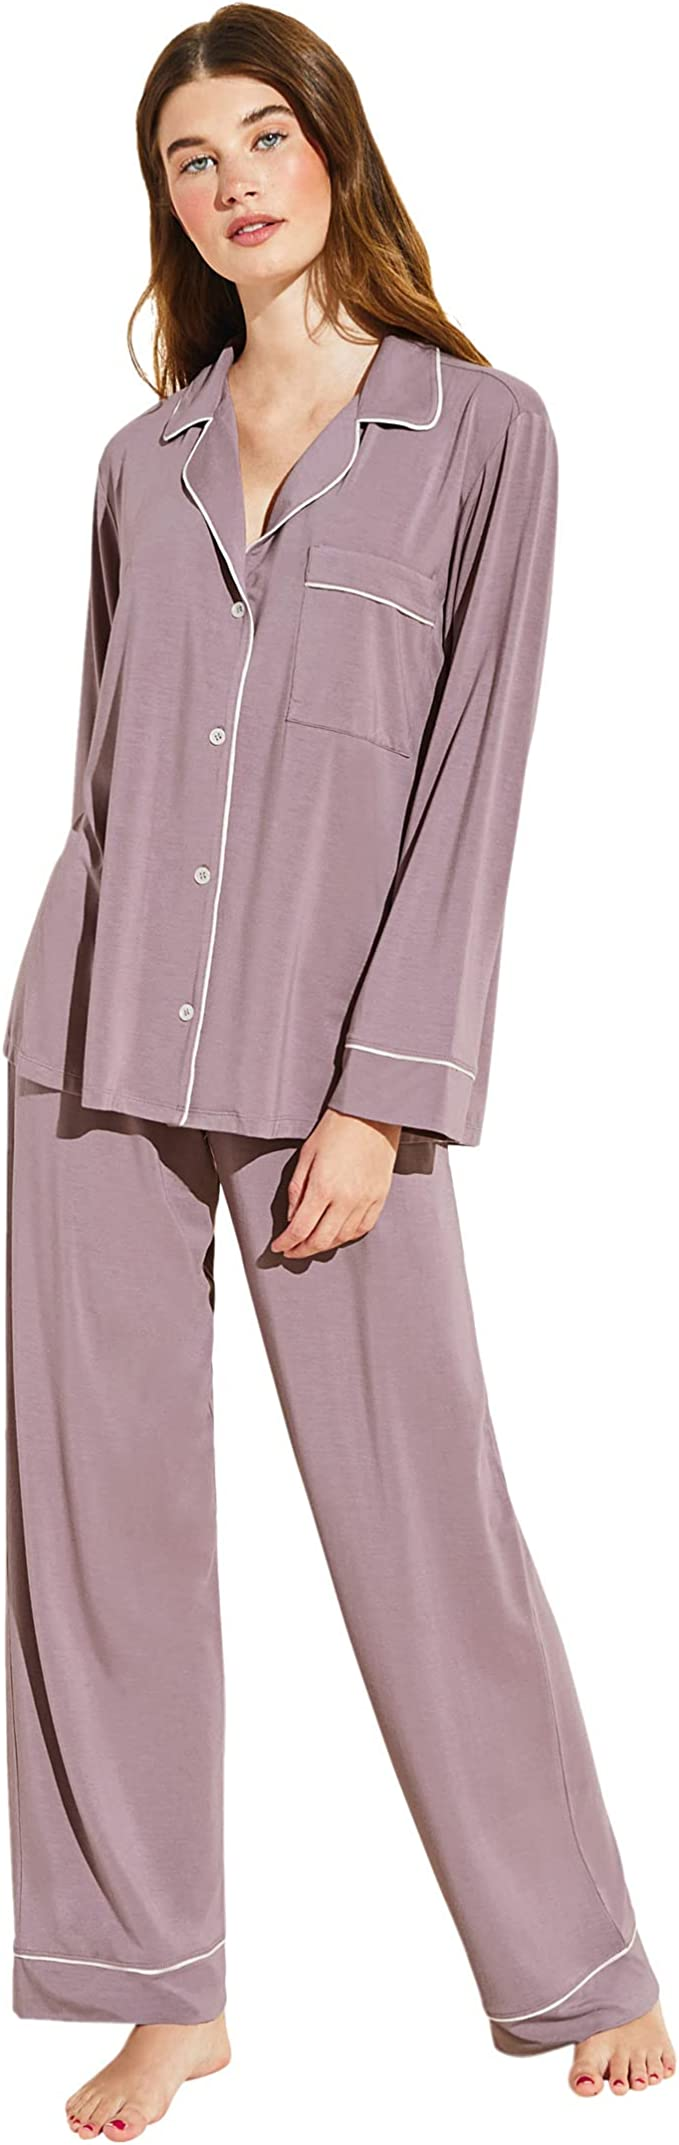 cozy pajamas for moms